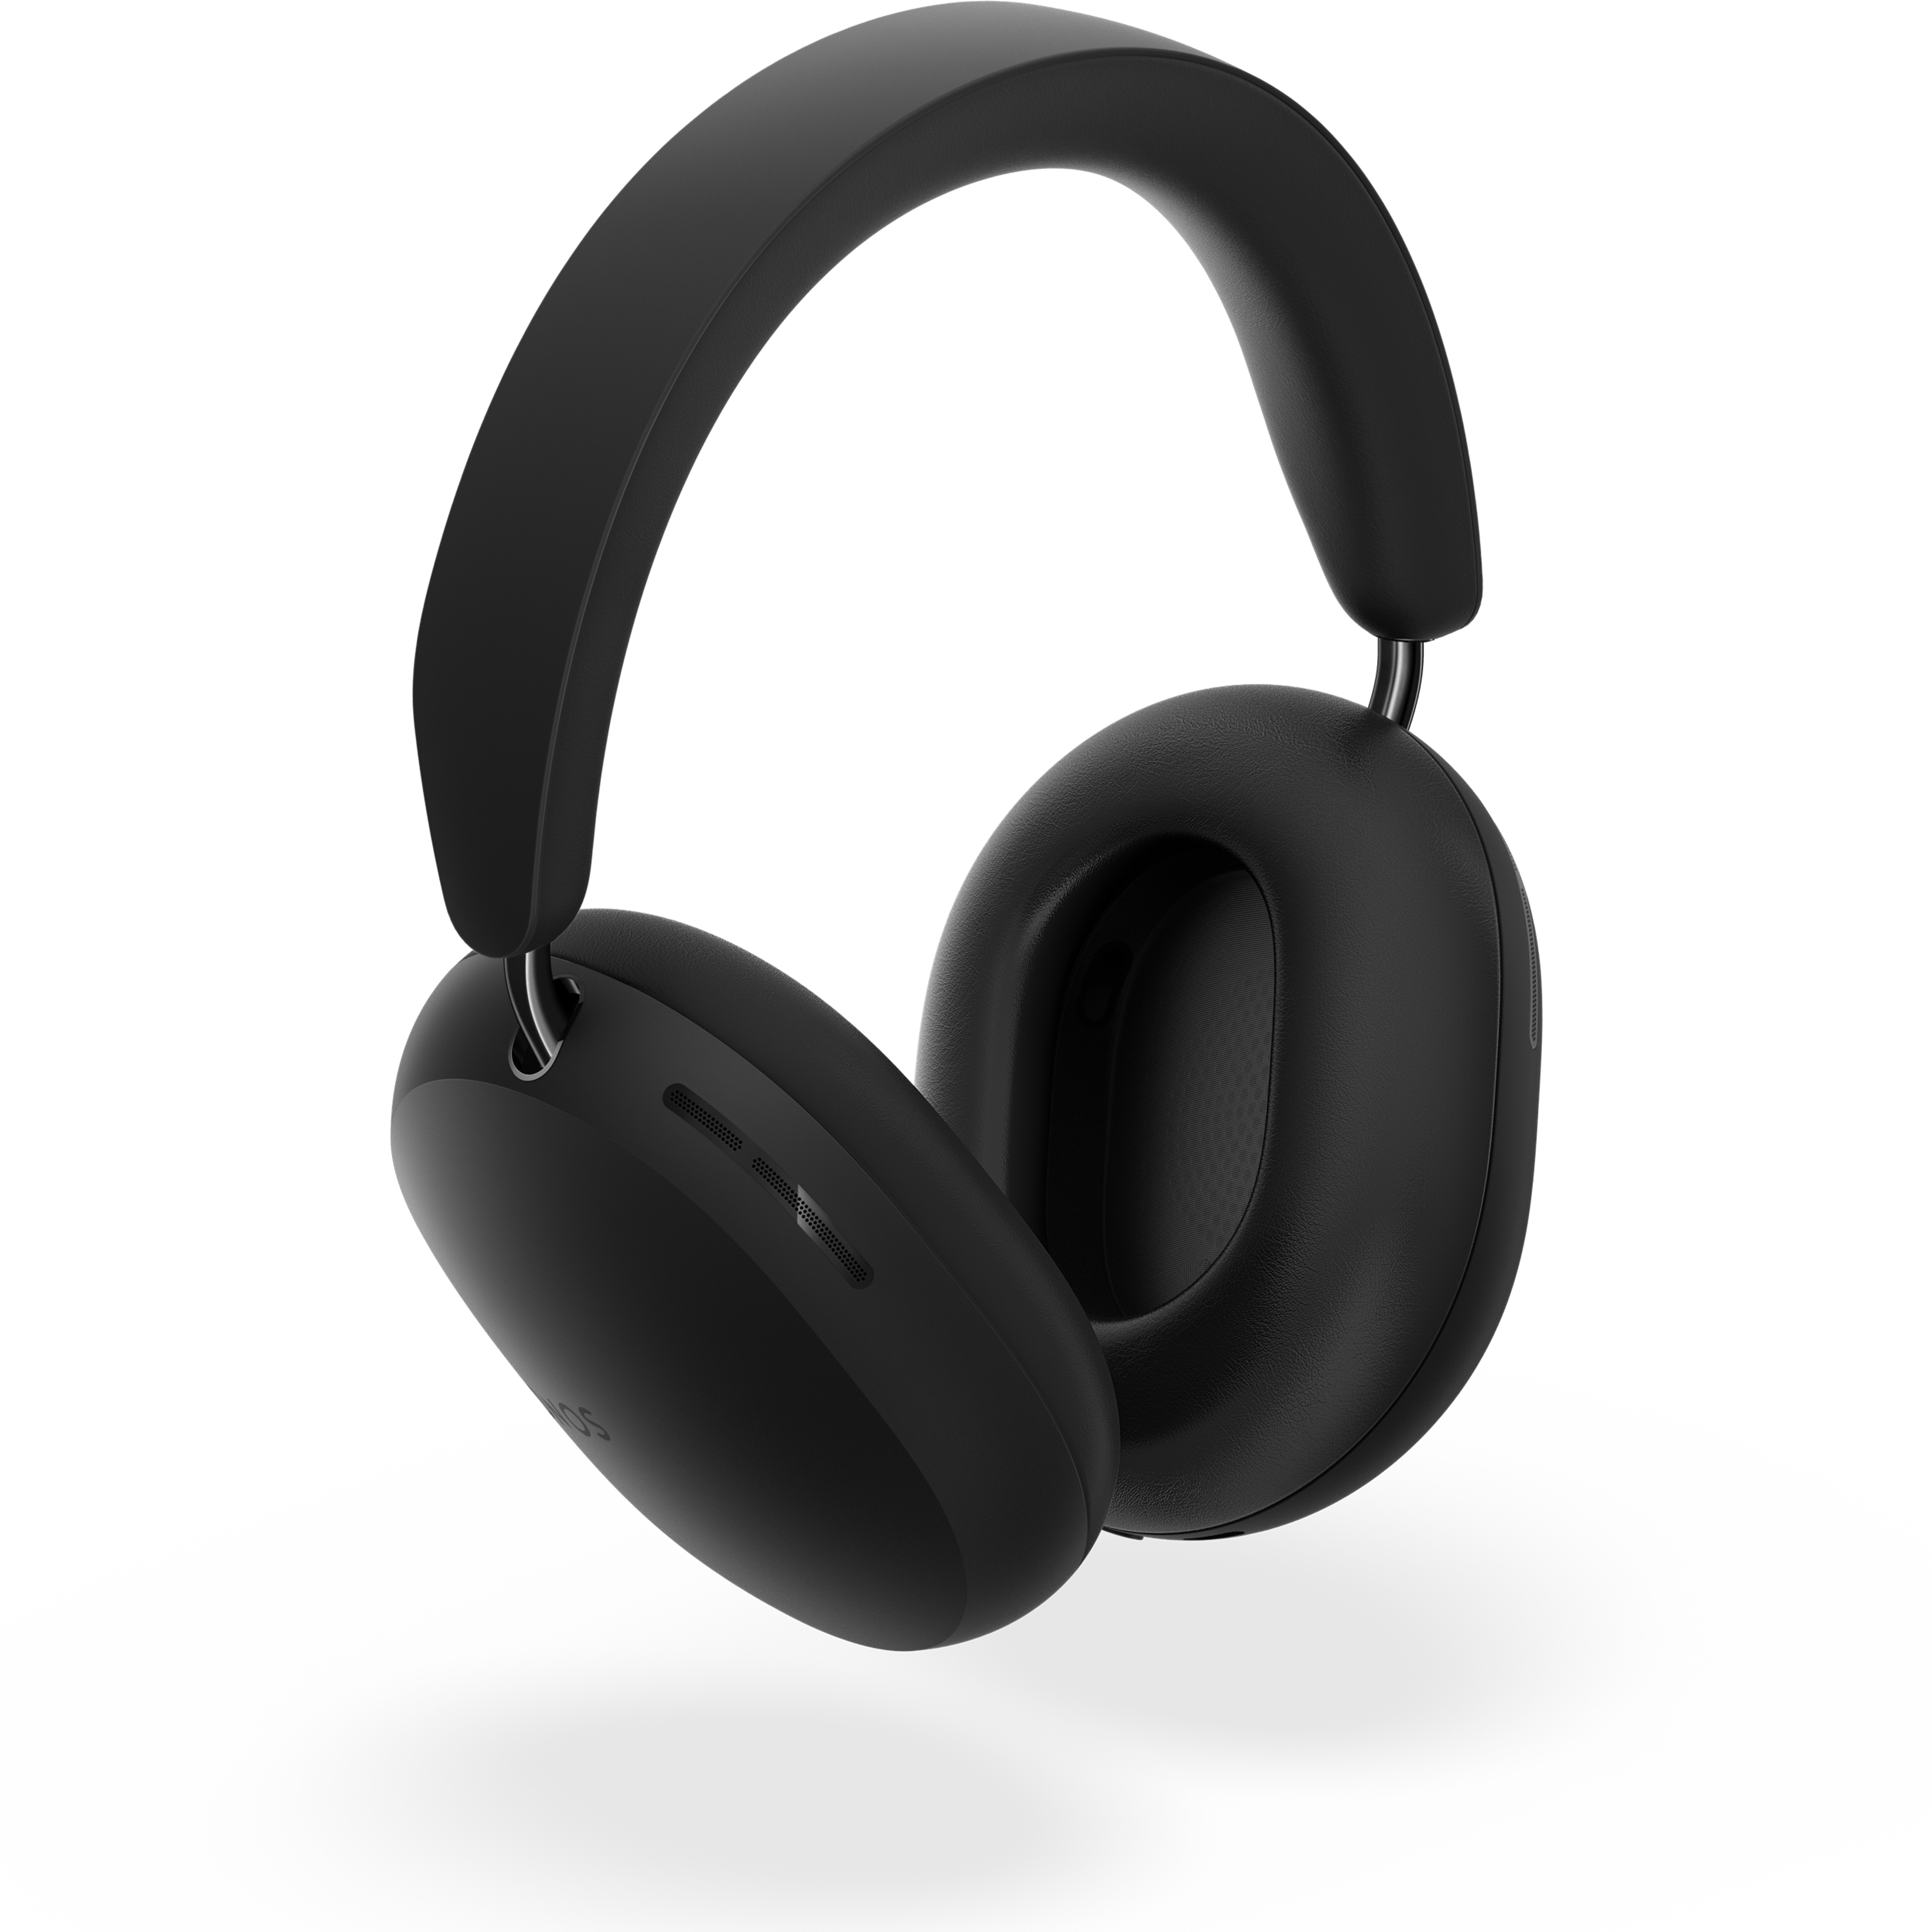 Sonos Ace-hovedtelefoner i sort, der svæver over en skygge, drejet lidt i en vinkel